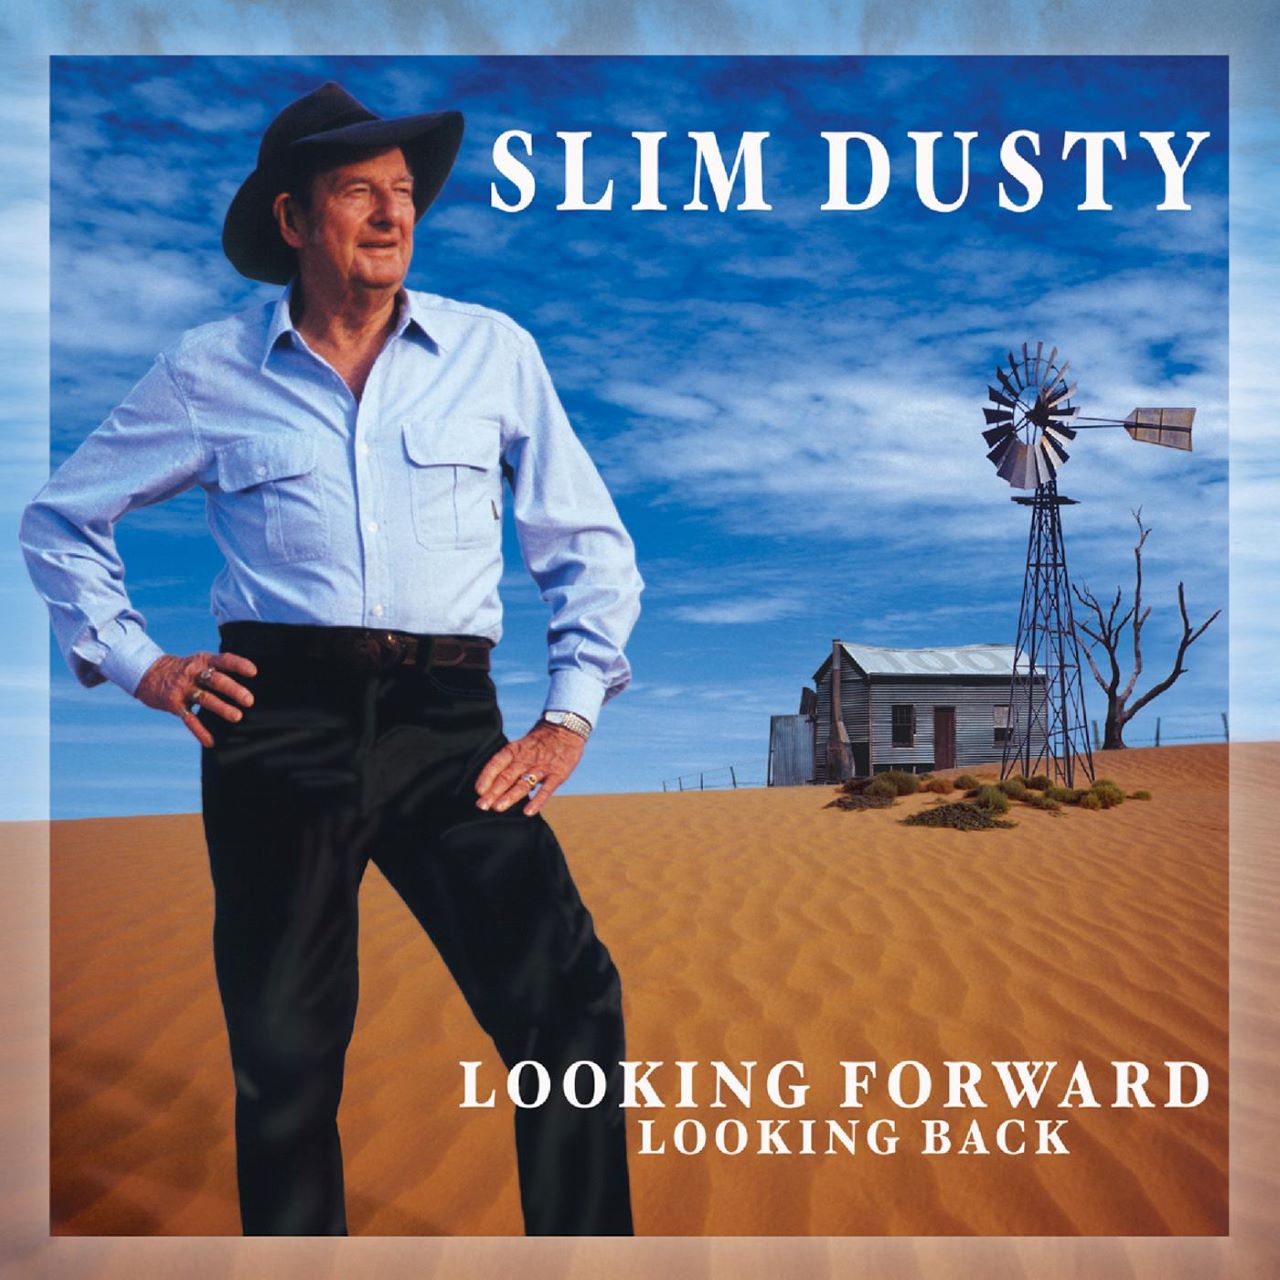 Slim Dusty - Looking Forward Looking Back cover album